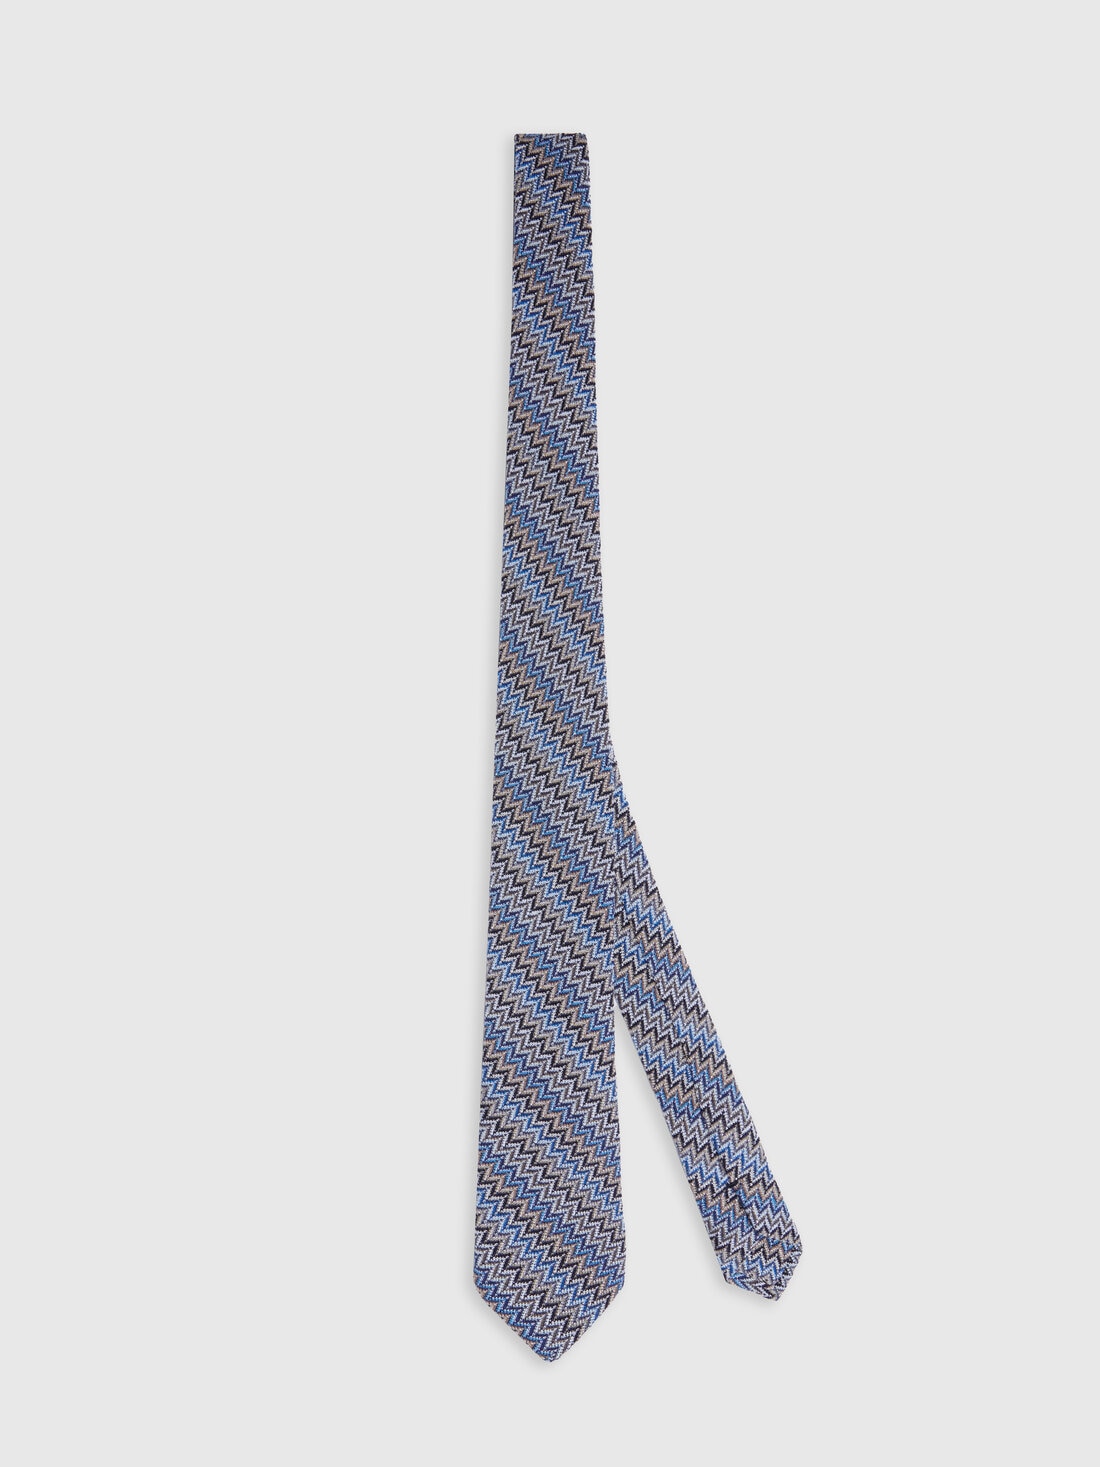 Cravatta in viscosa e cotone zig zag, Multicolore  - 8053147141855 - 0